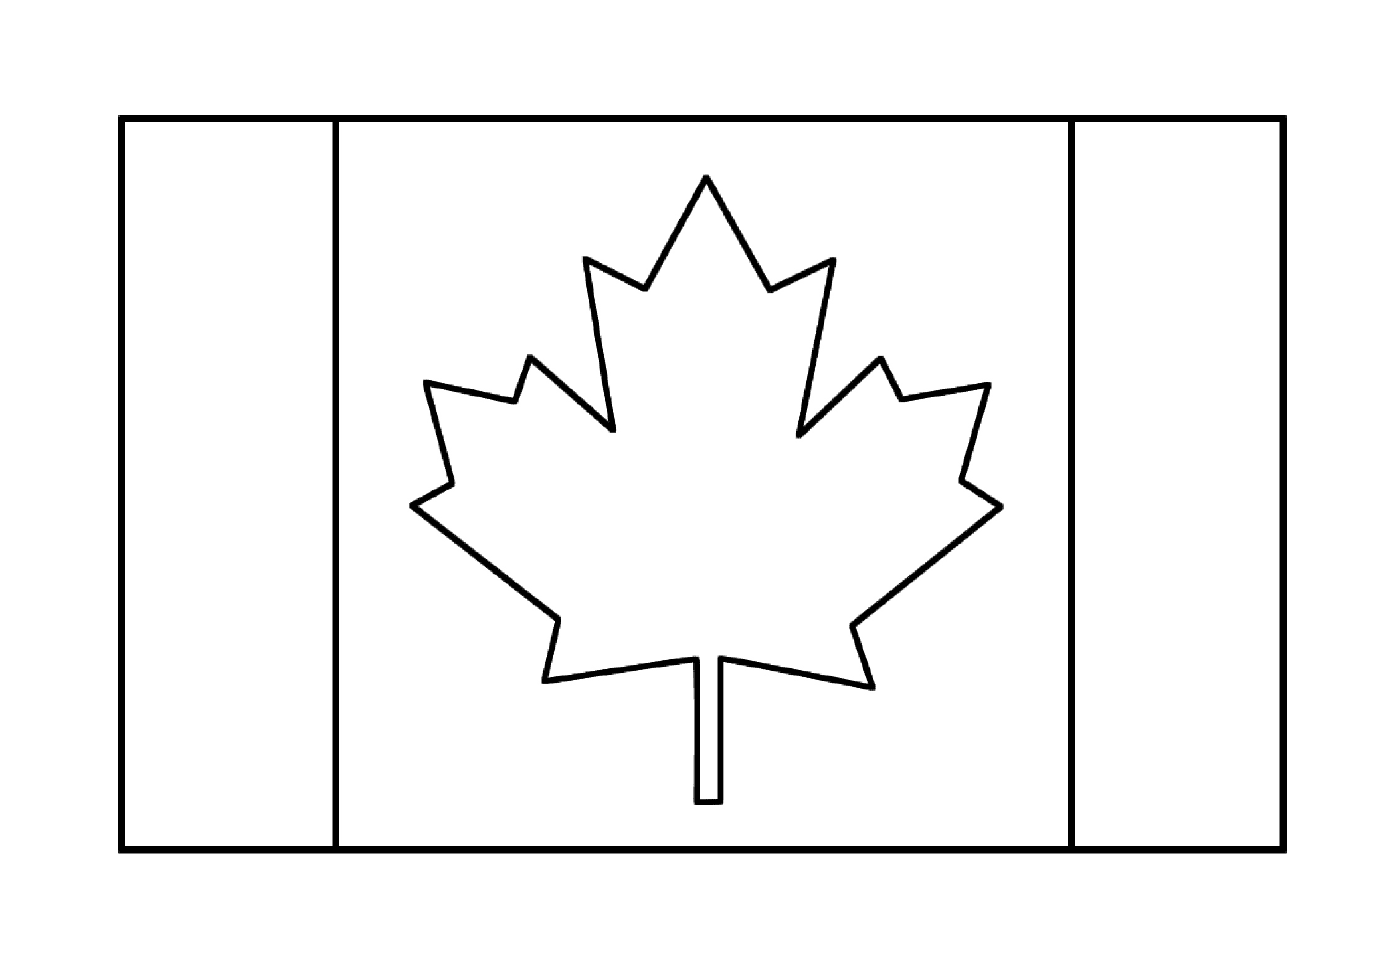  加拿大国旗 